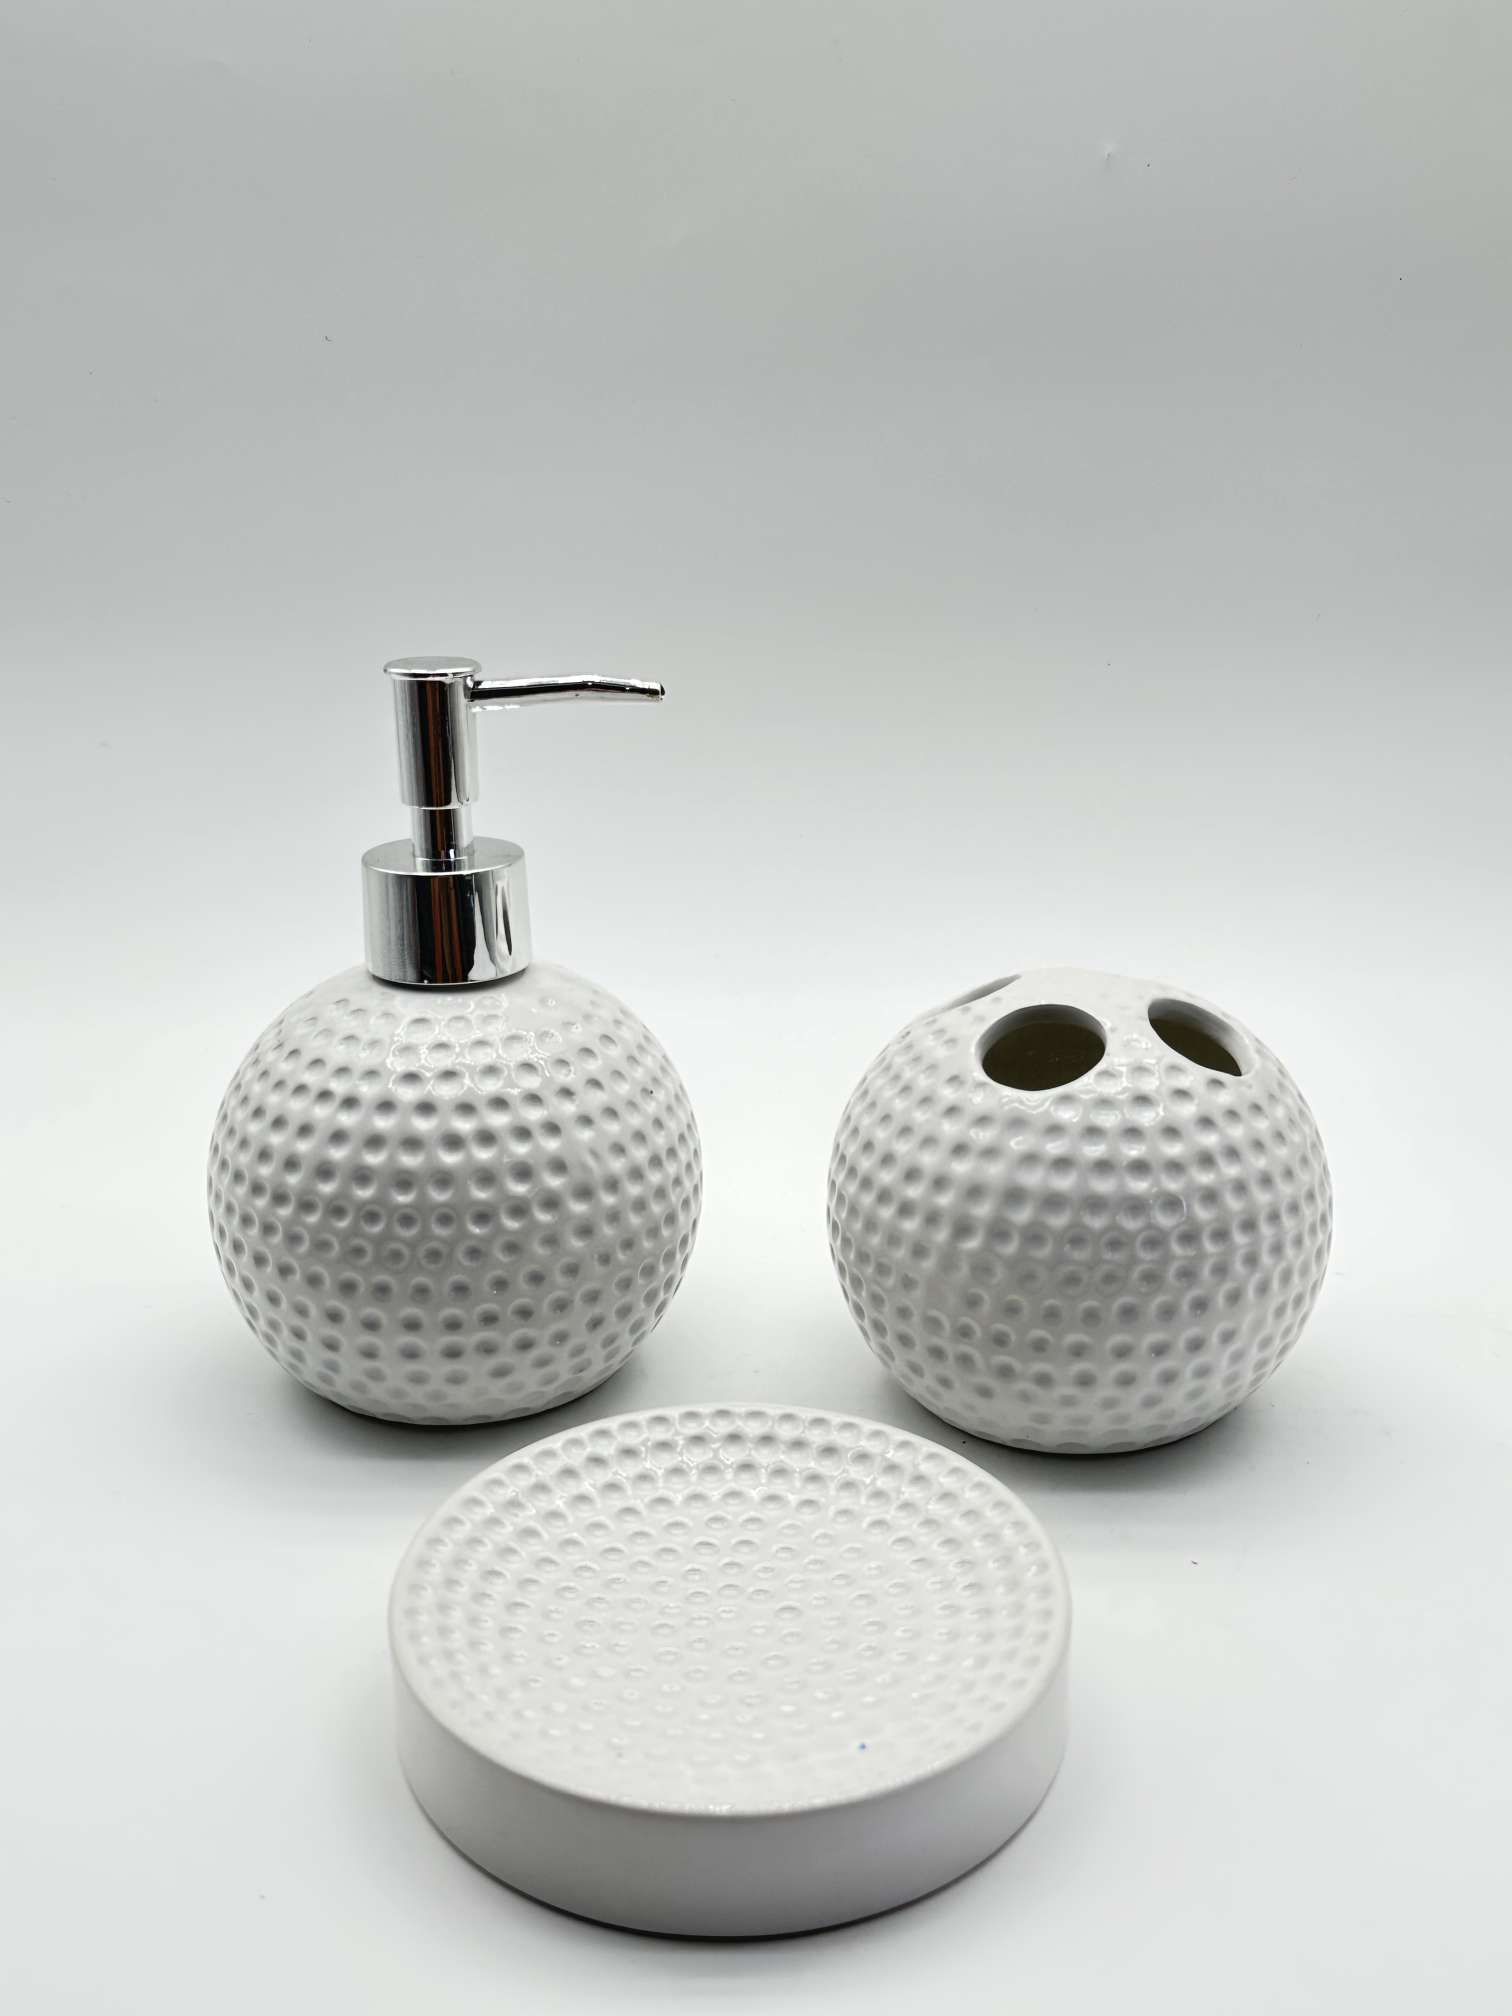 创意美式卫浴三件套简约浴室用品套件 陶瓷卫浴洗漱套装图